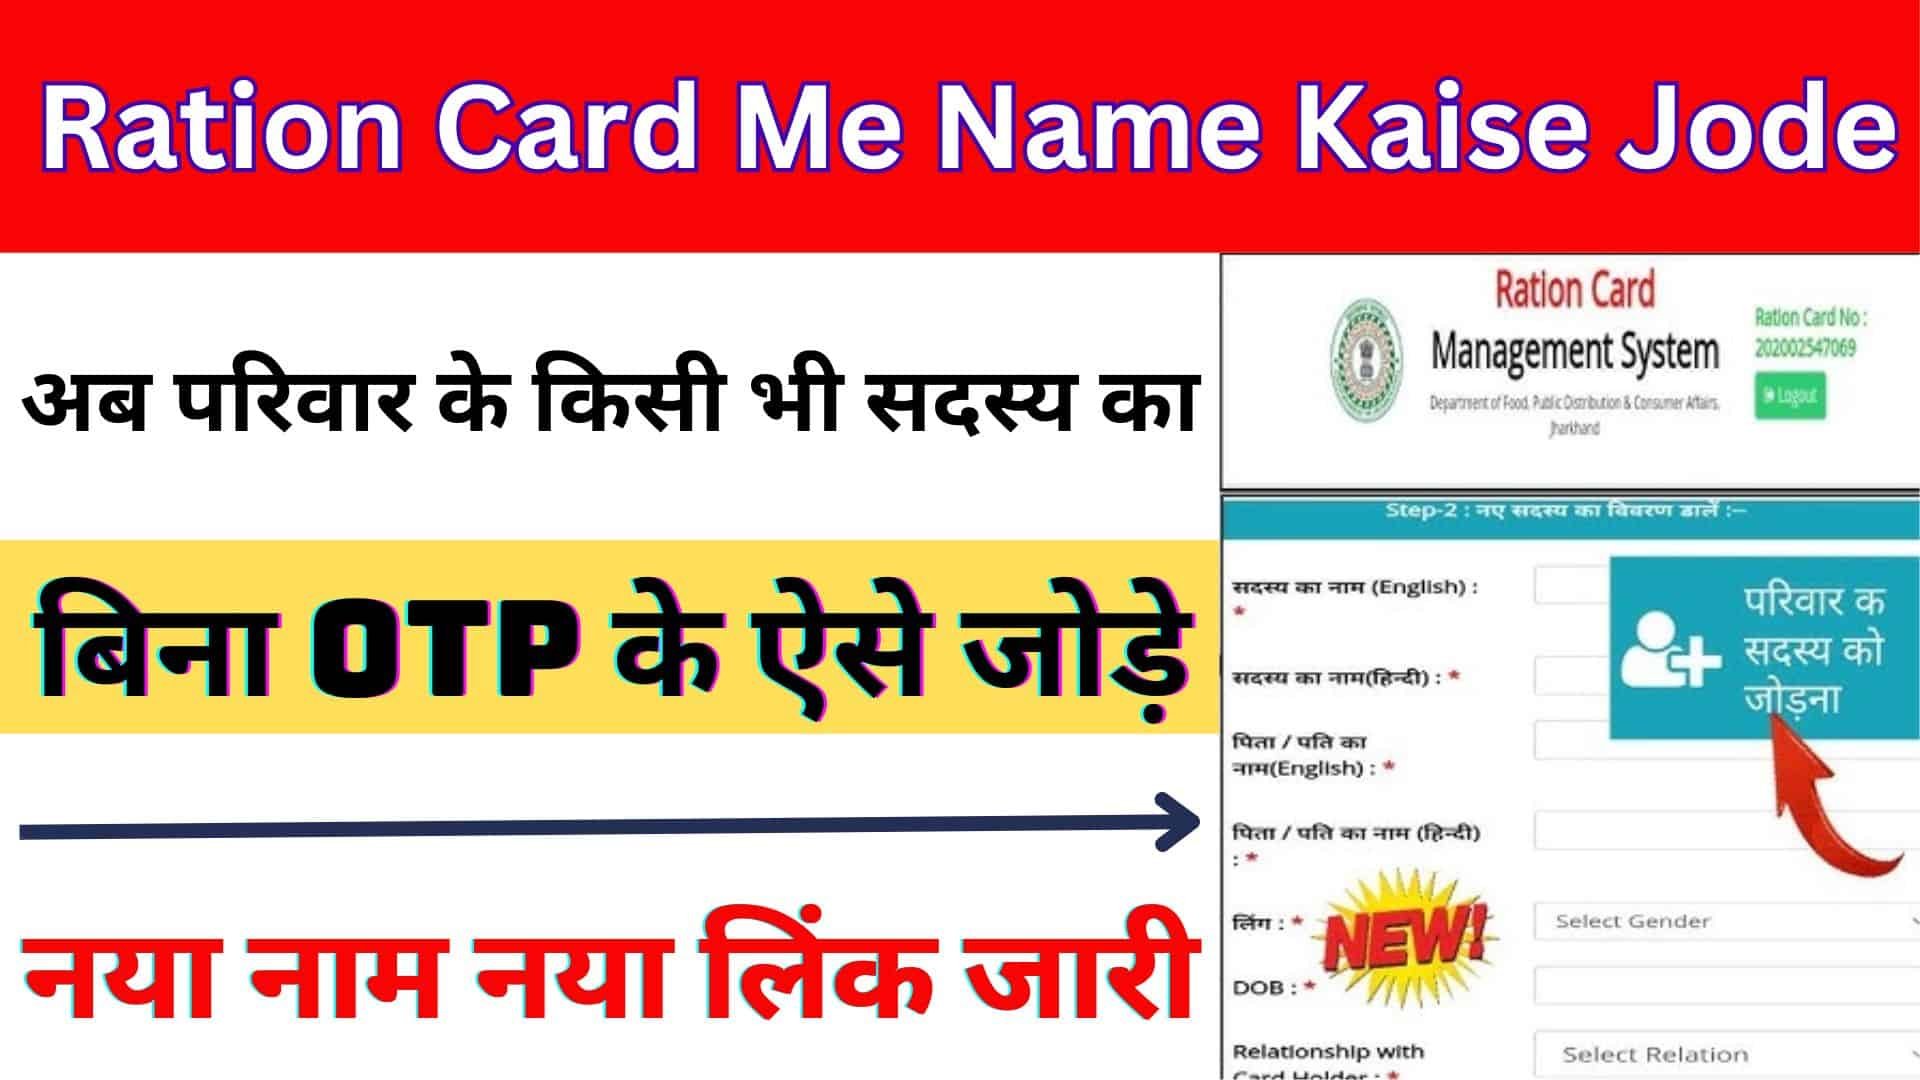 Ration Card Me Name Kaise Jode 2023 : अब परिवार के किसी भी सदस्य का बिना OTP के ऐसे जोड़े नया नाम नया लिंक जारी